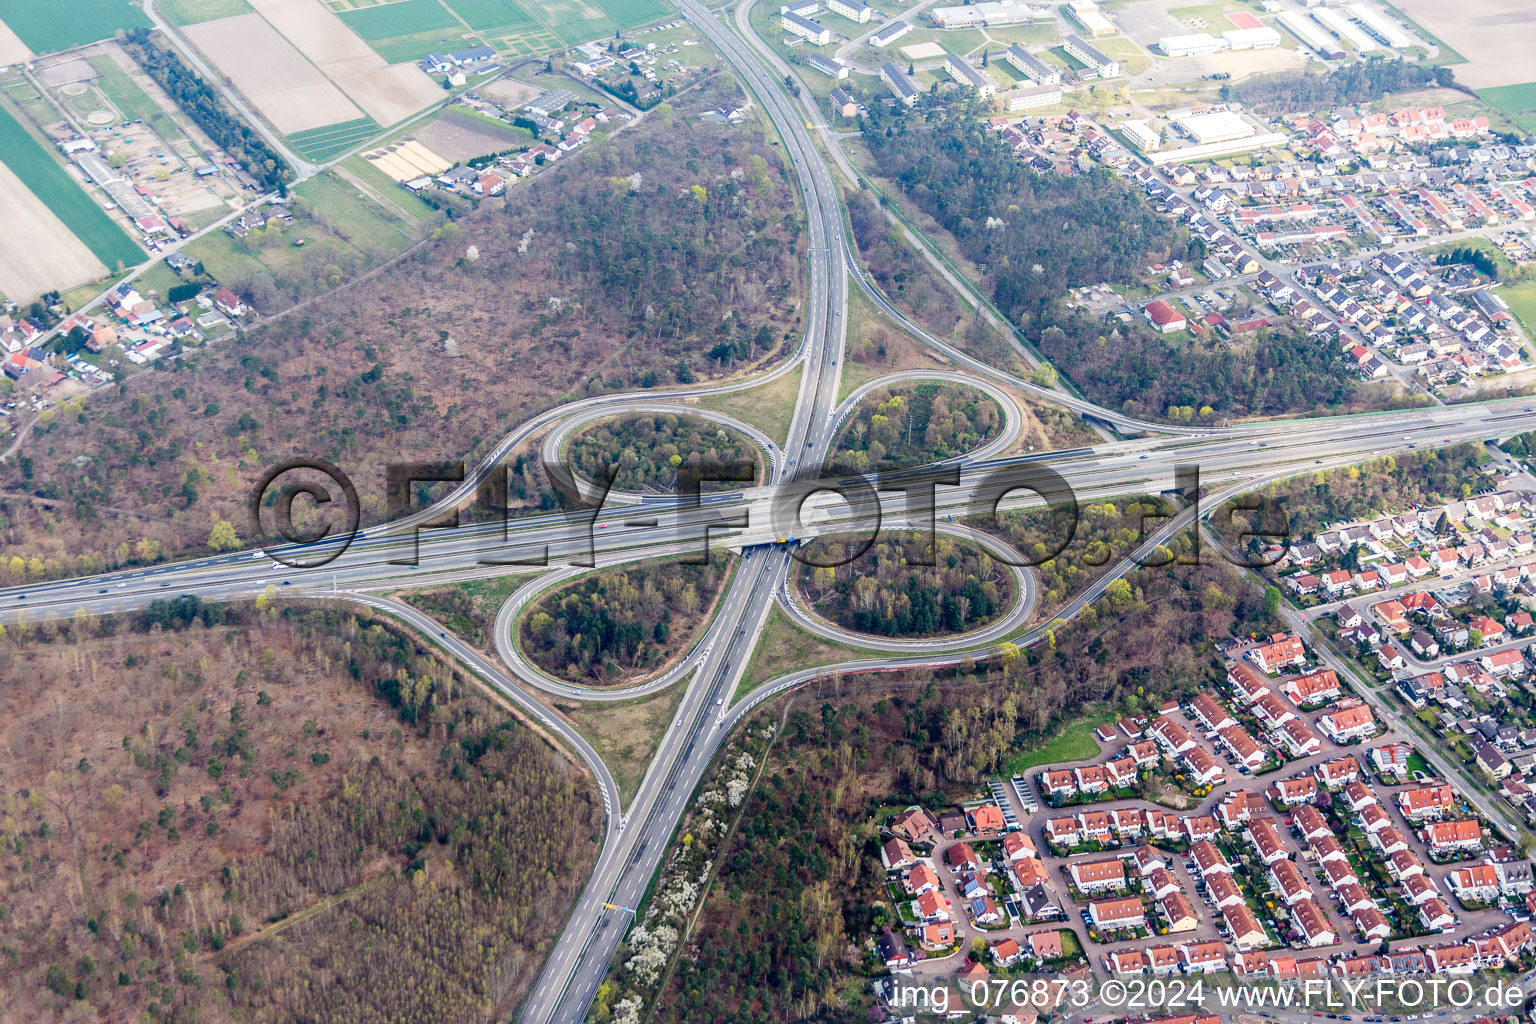 Vue aérienne de Orientation de la circulation et chaussées à l'intersection des BAB A61 et B9 à Speyer dans le département Rhénanie-Palatinat, Allemagne